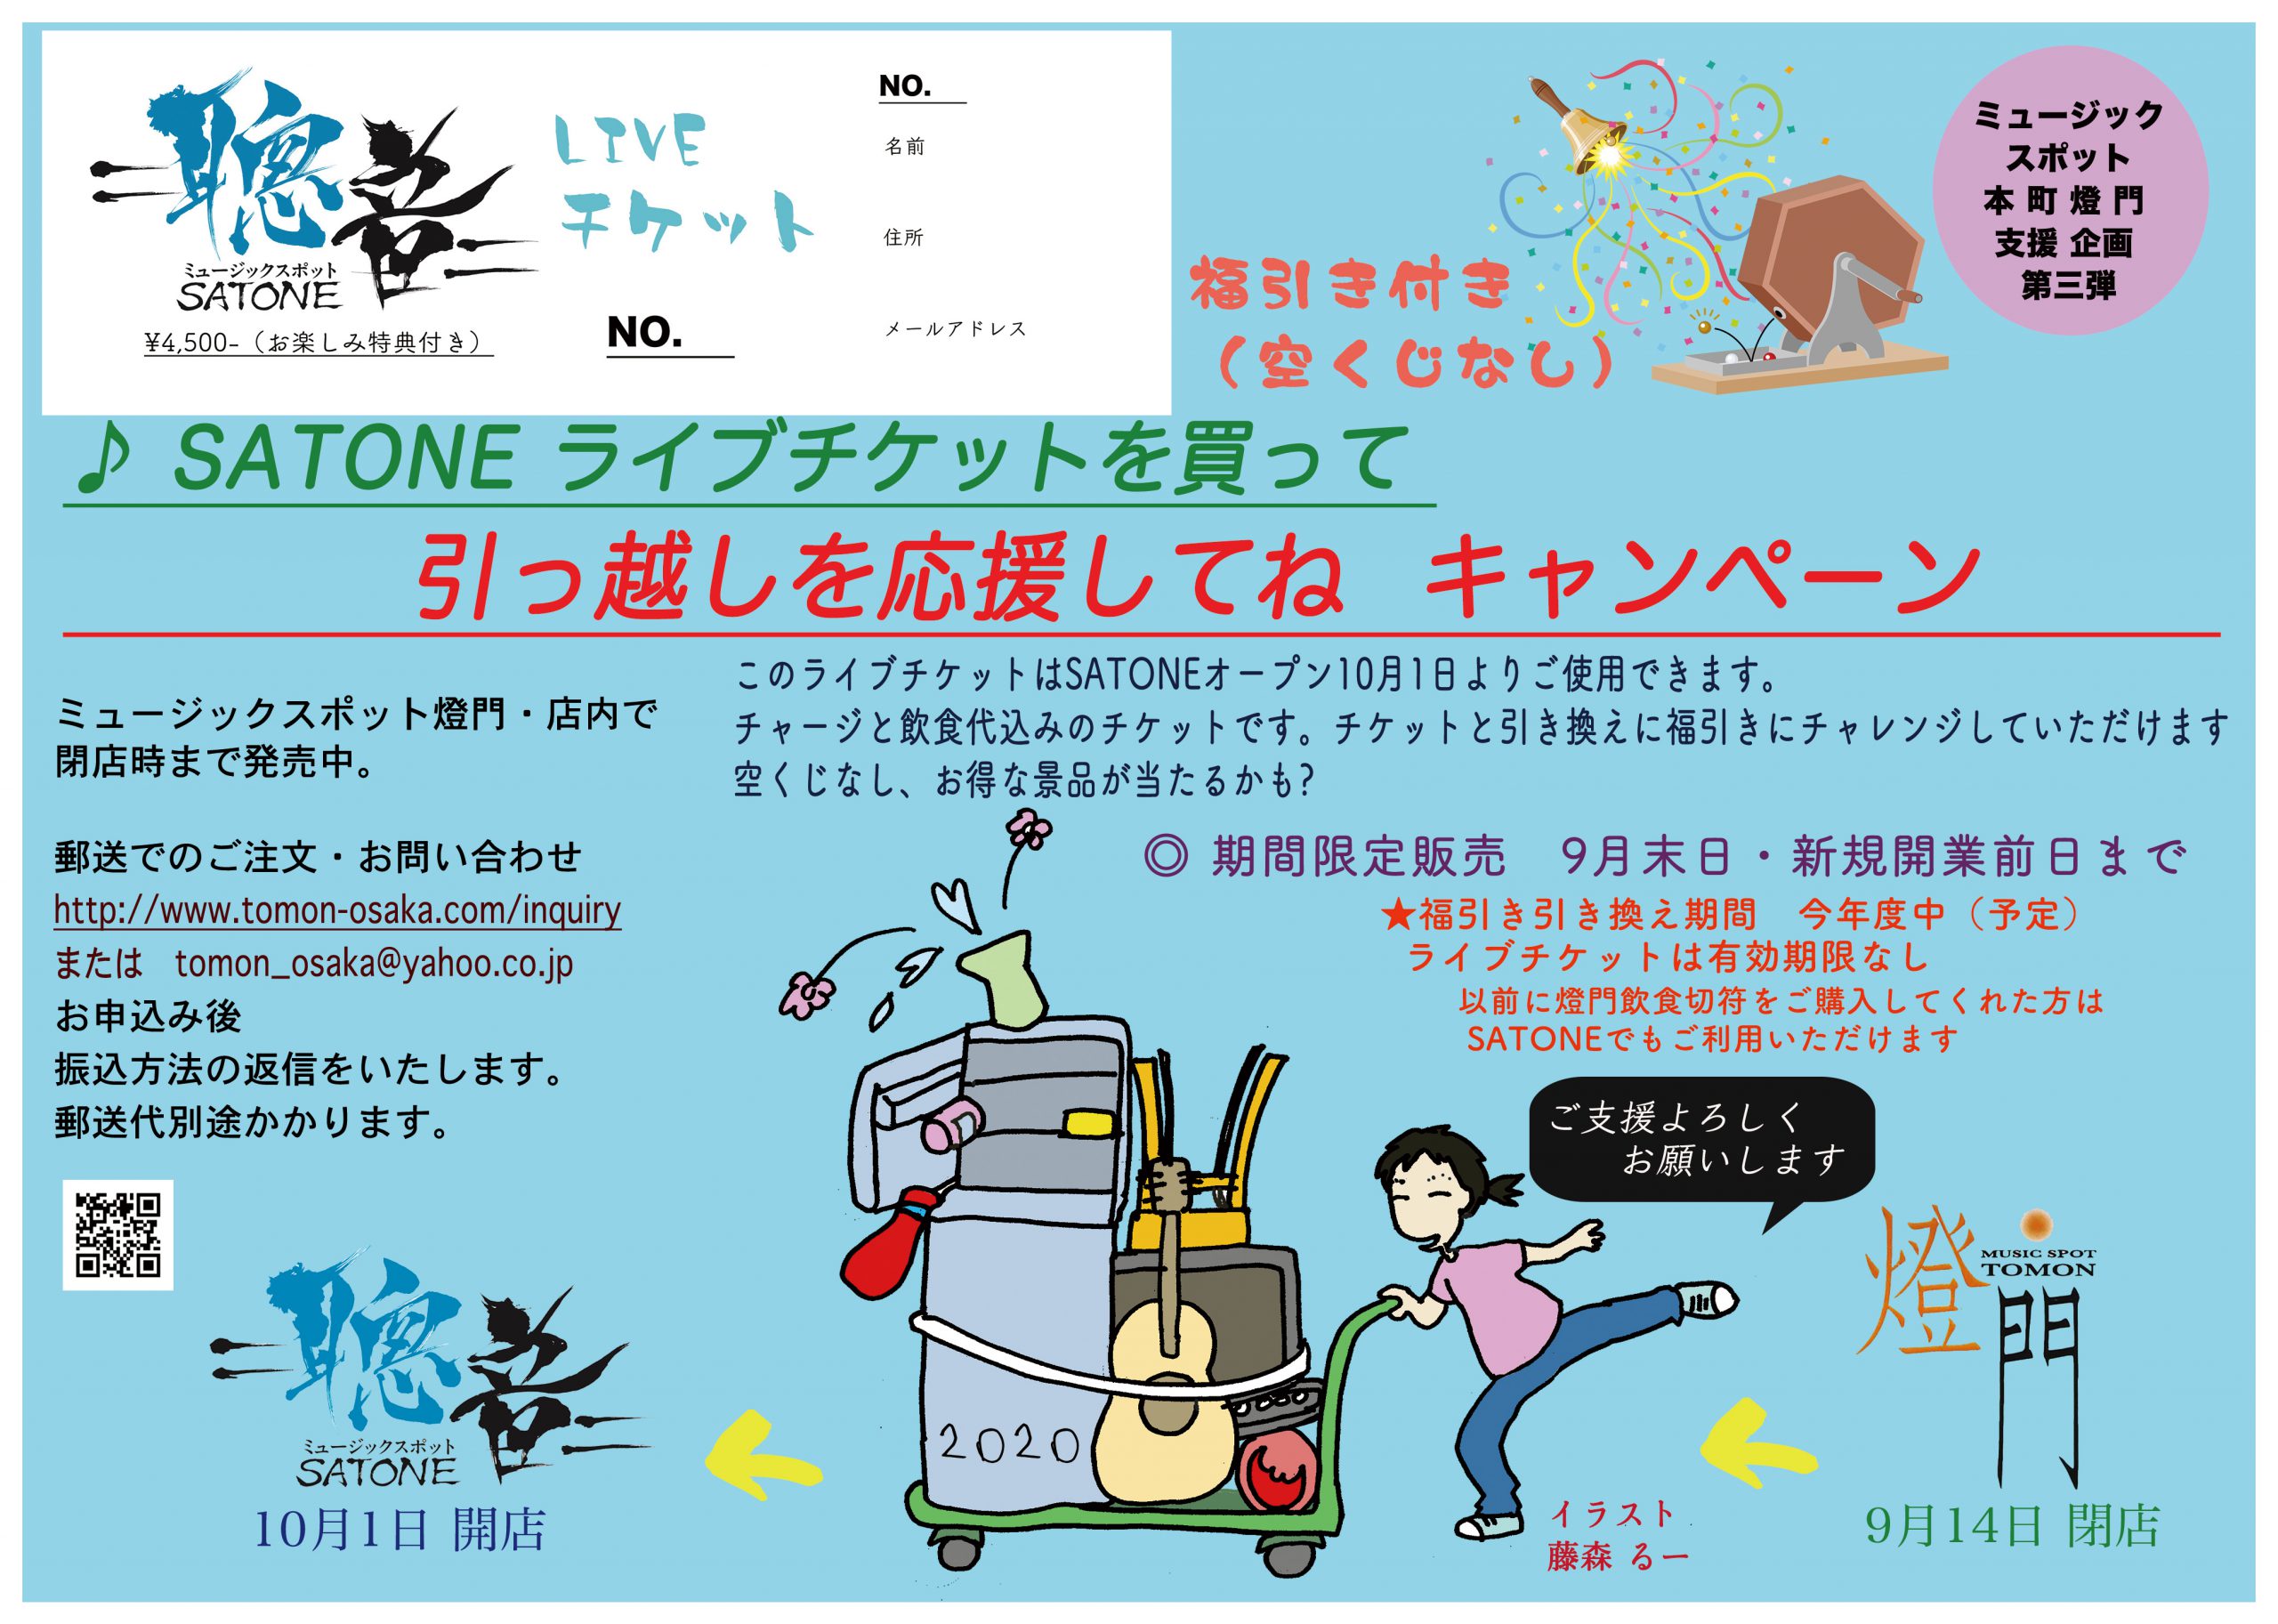 本 町 燈 門～堺筋本町 SATONE 支援 企画 第三弾             SATONE飲食切符を買って 応援してね、 福引付きキャンペーン